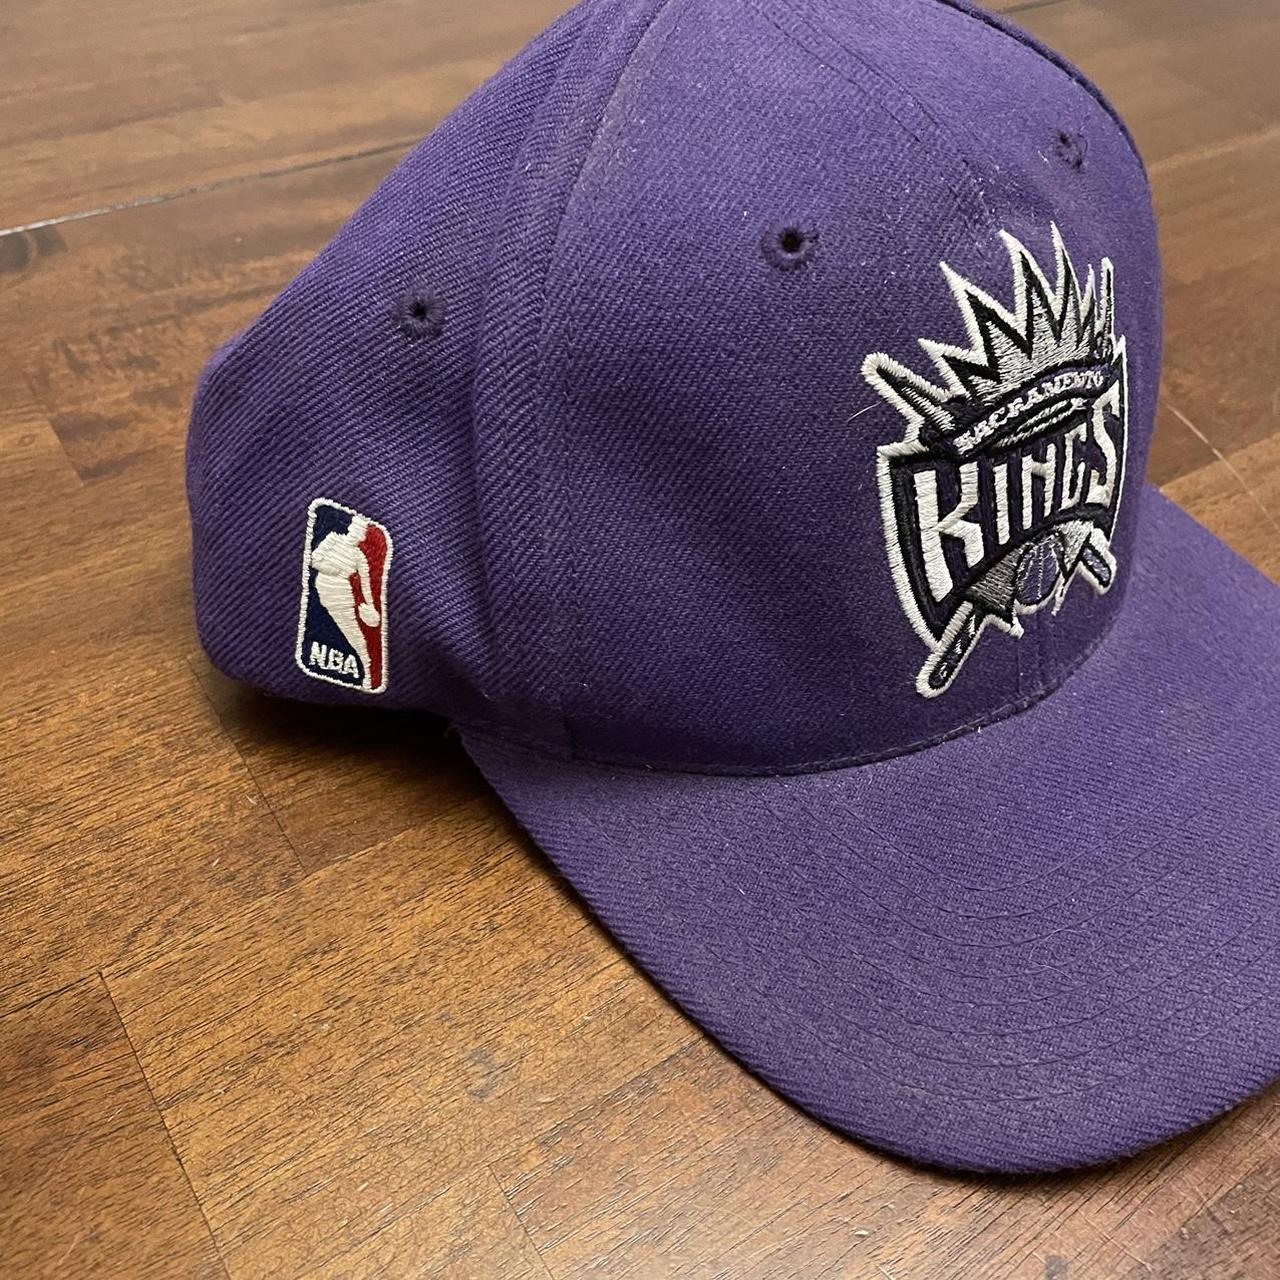  Sacramento Kings Hats